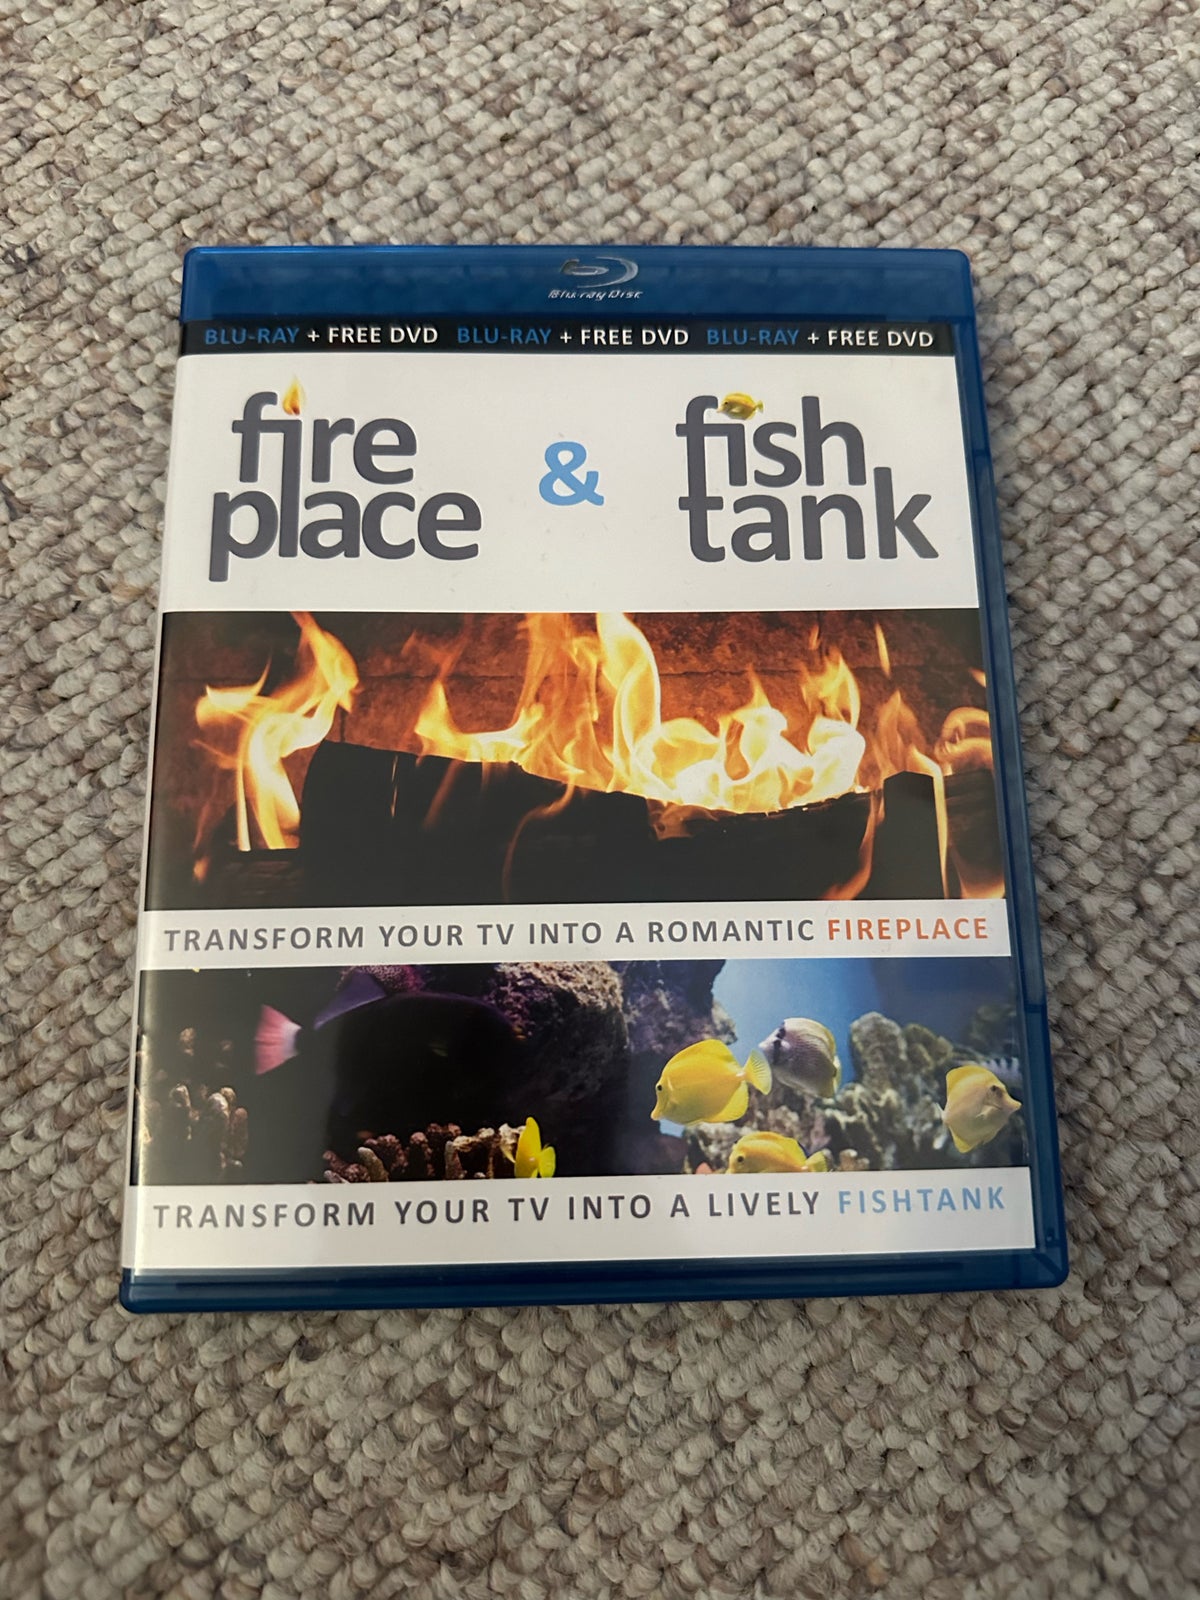 Fireplace & fish tank, Blu-ray, andet –  – Køb og Salg af Nyt og Brugt